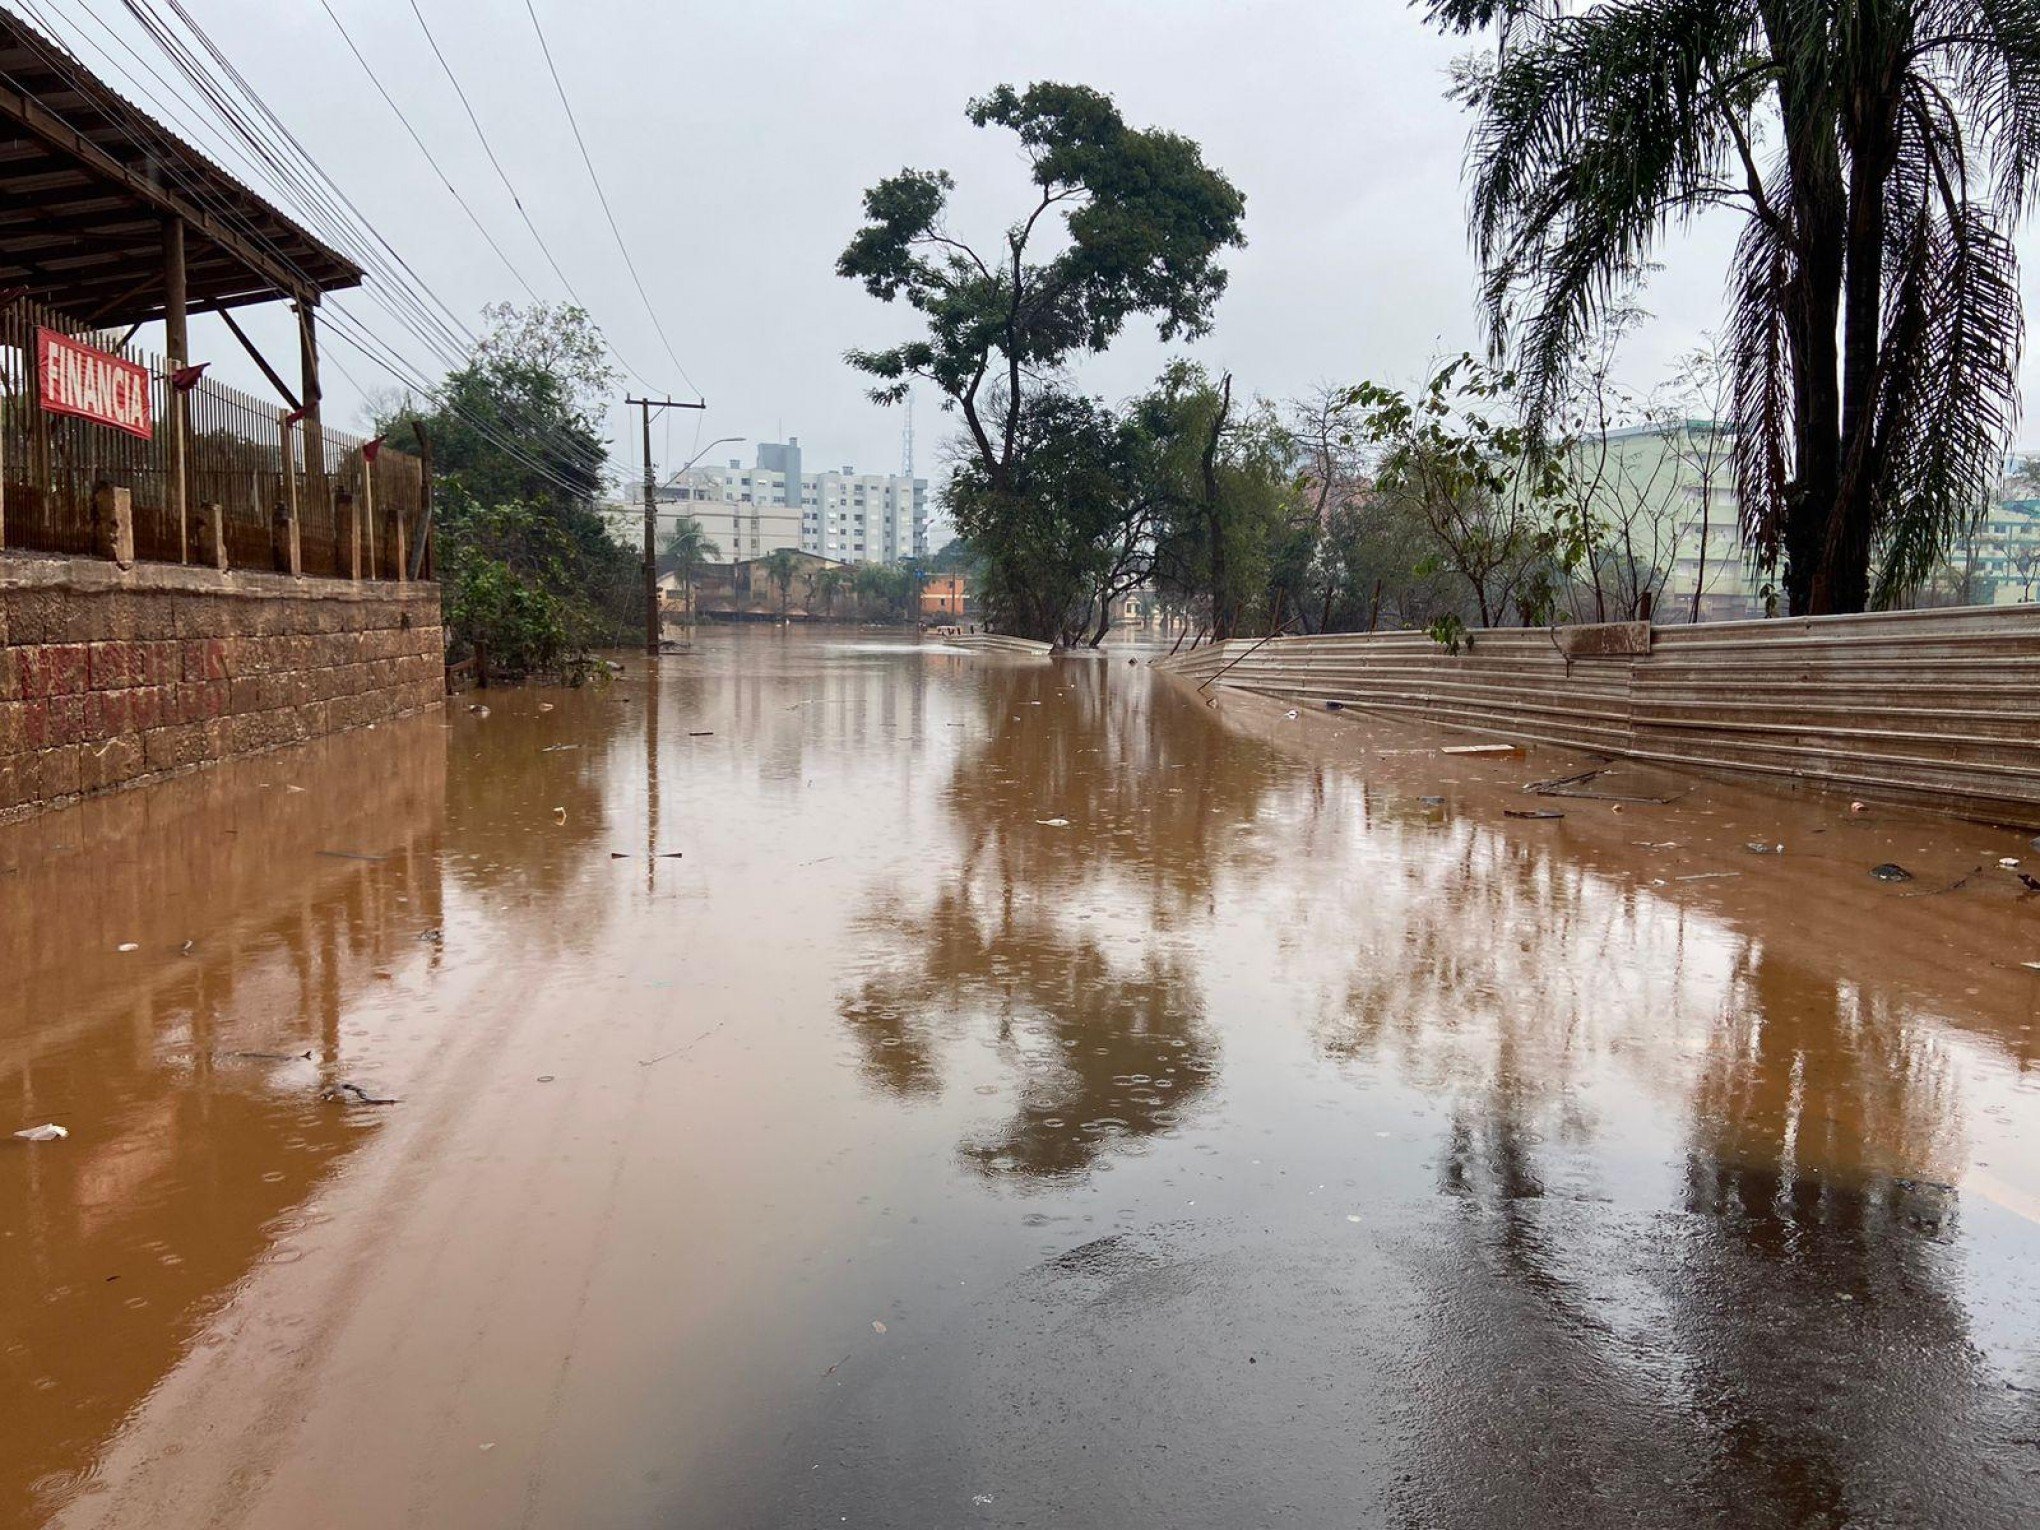 ALERTA NO VALE DO TAQUARI: Região tem risco de "inundações severas" por causa do volume do rio